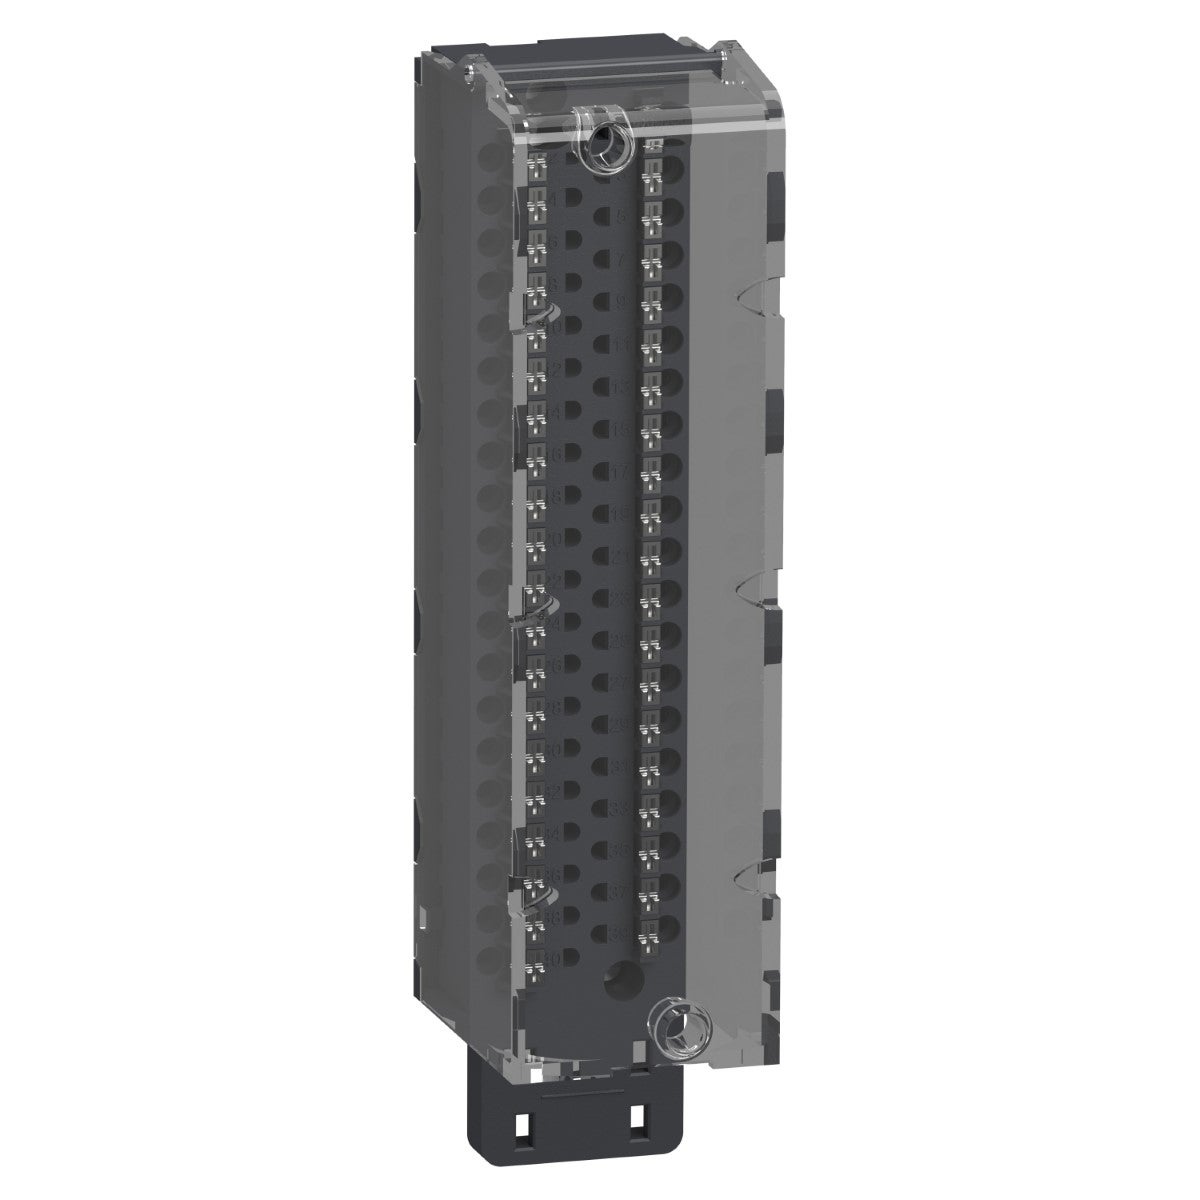 terminal block, Modicon X80, 40-pin removable spring